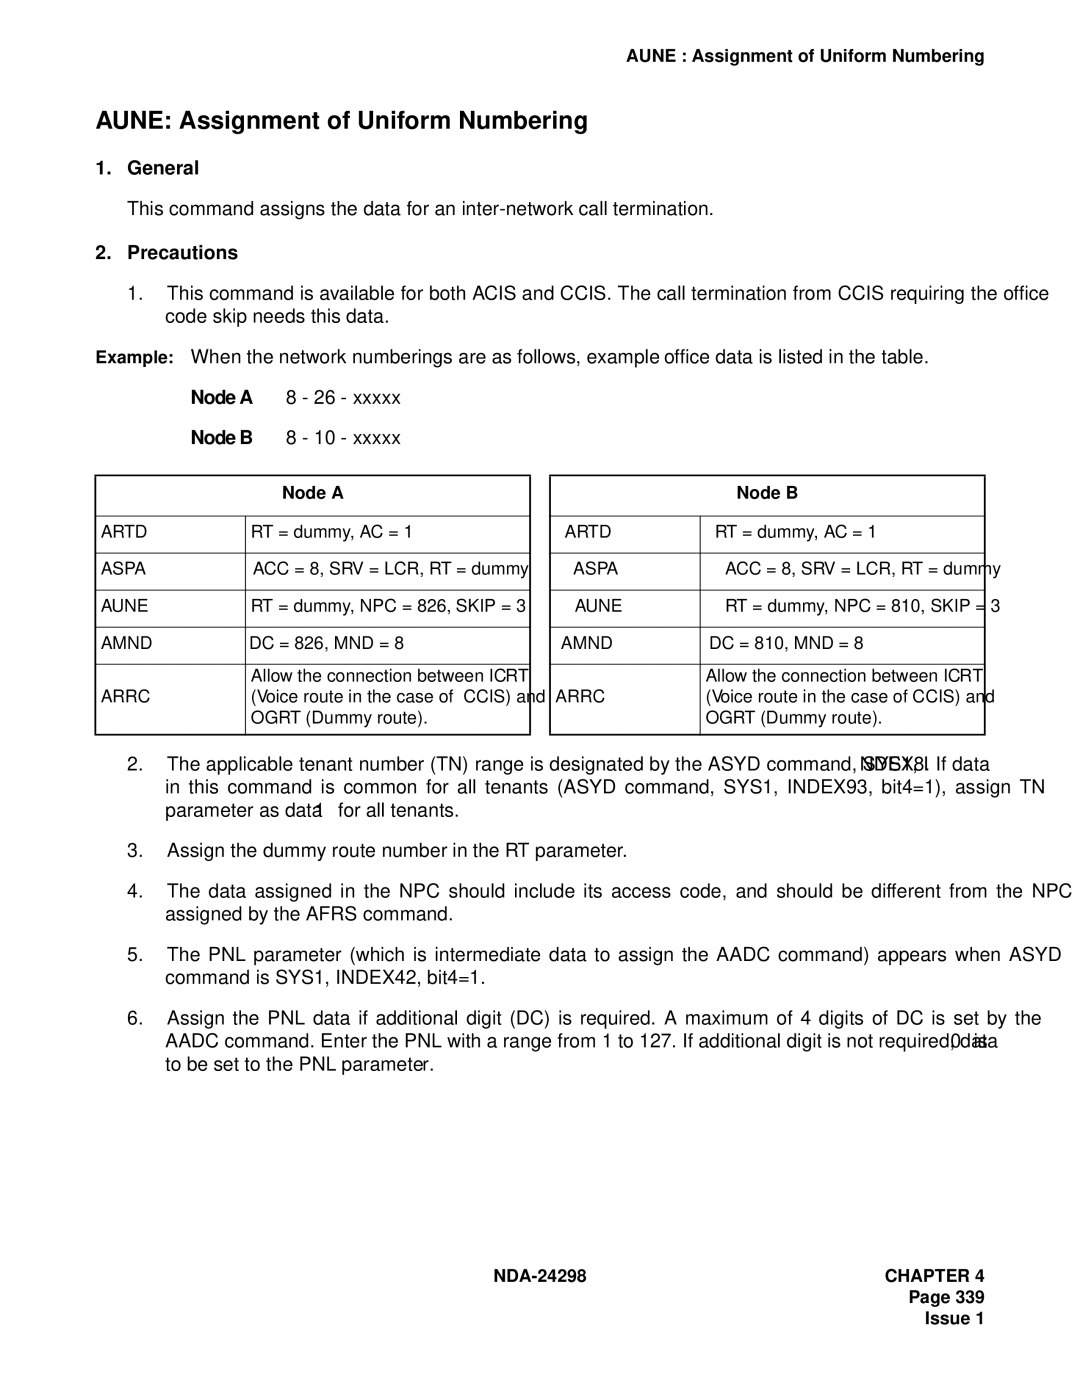 NEC NDA-24298 manual Aune Assignment of Uniform Numbering, Node a, Node B 